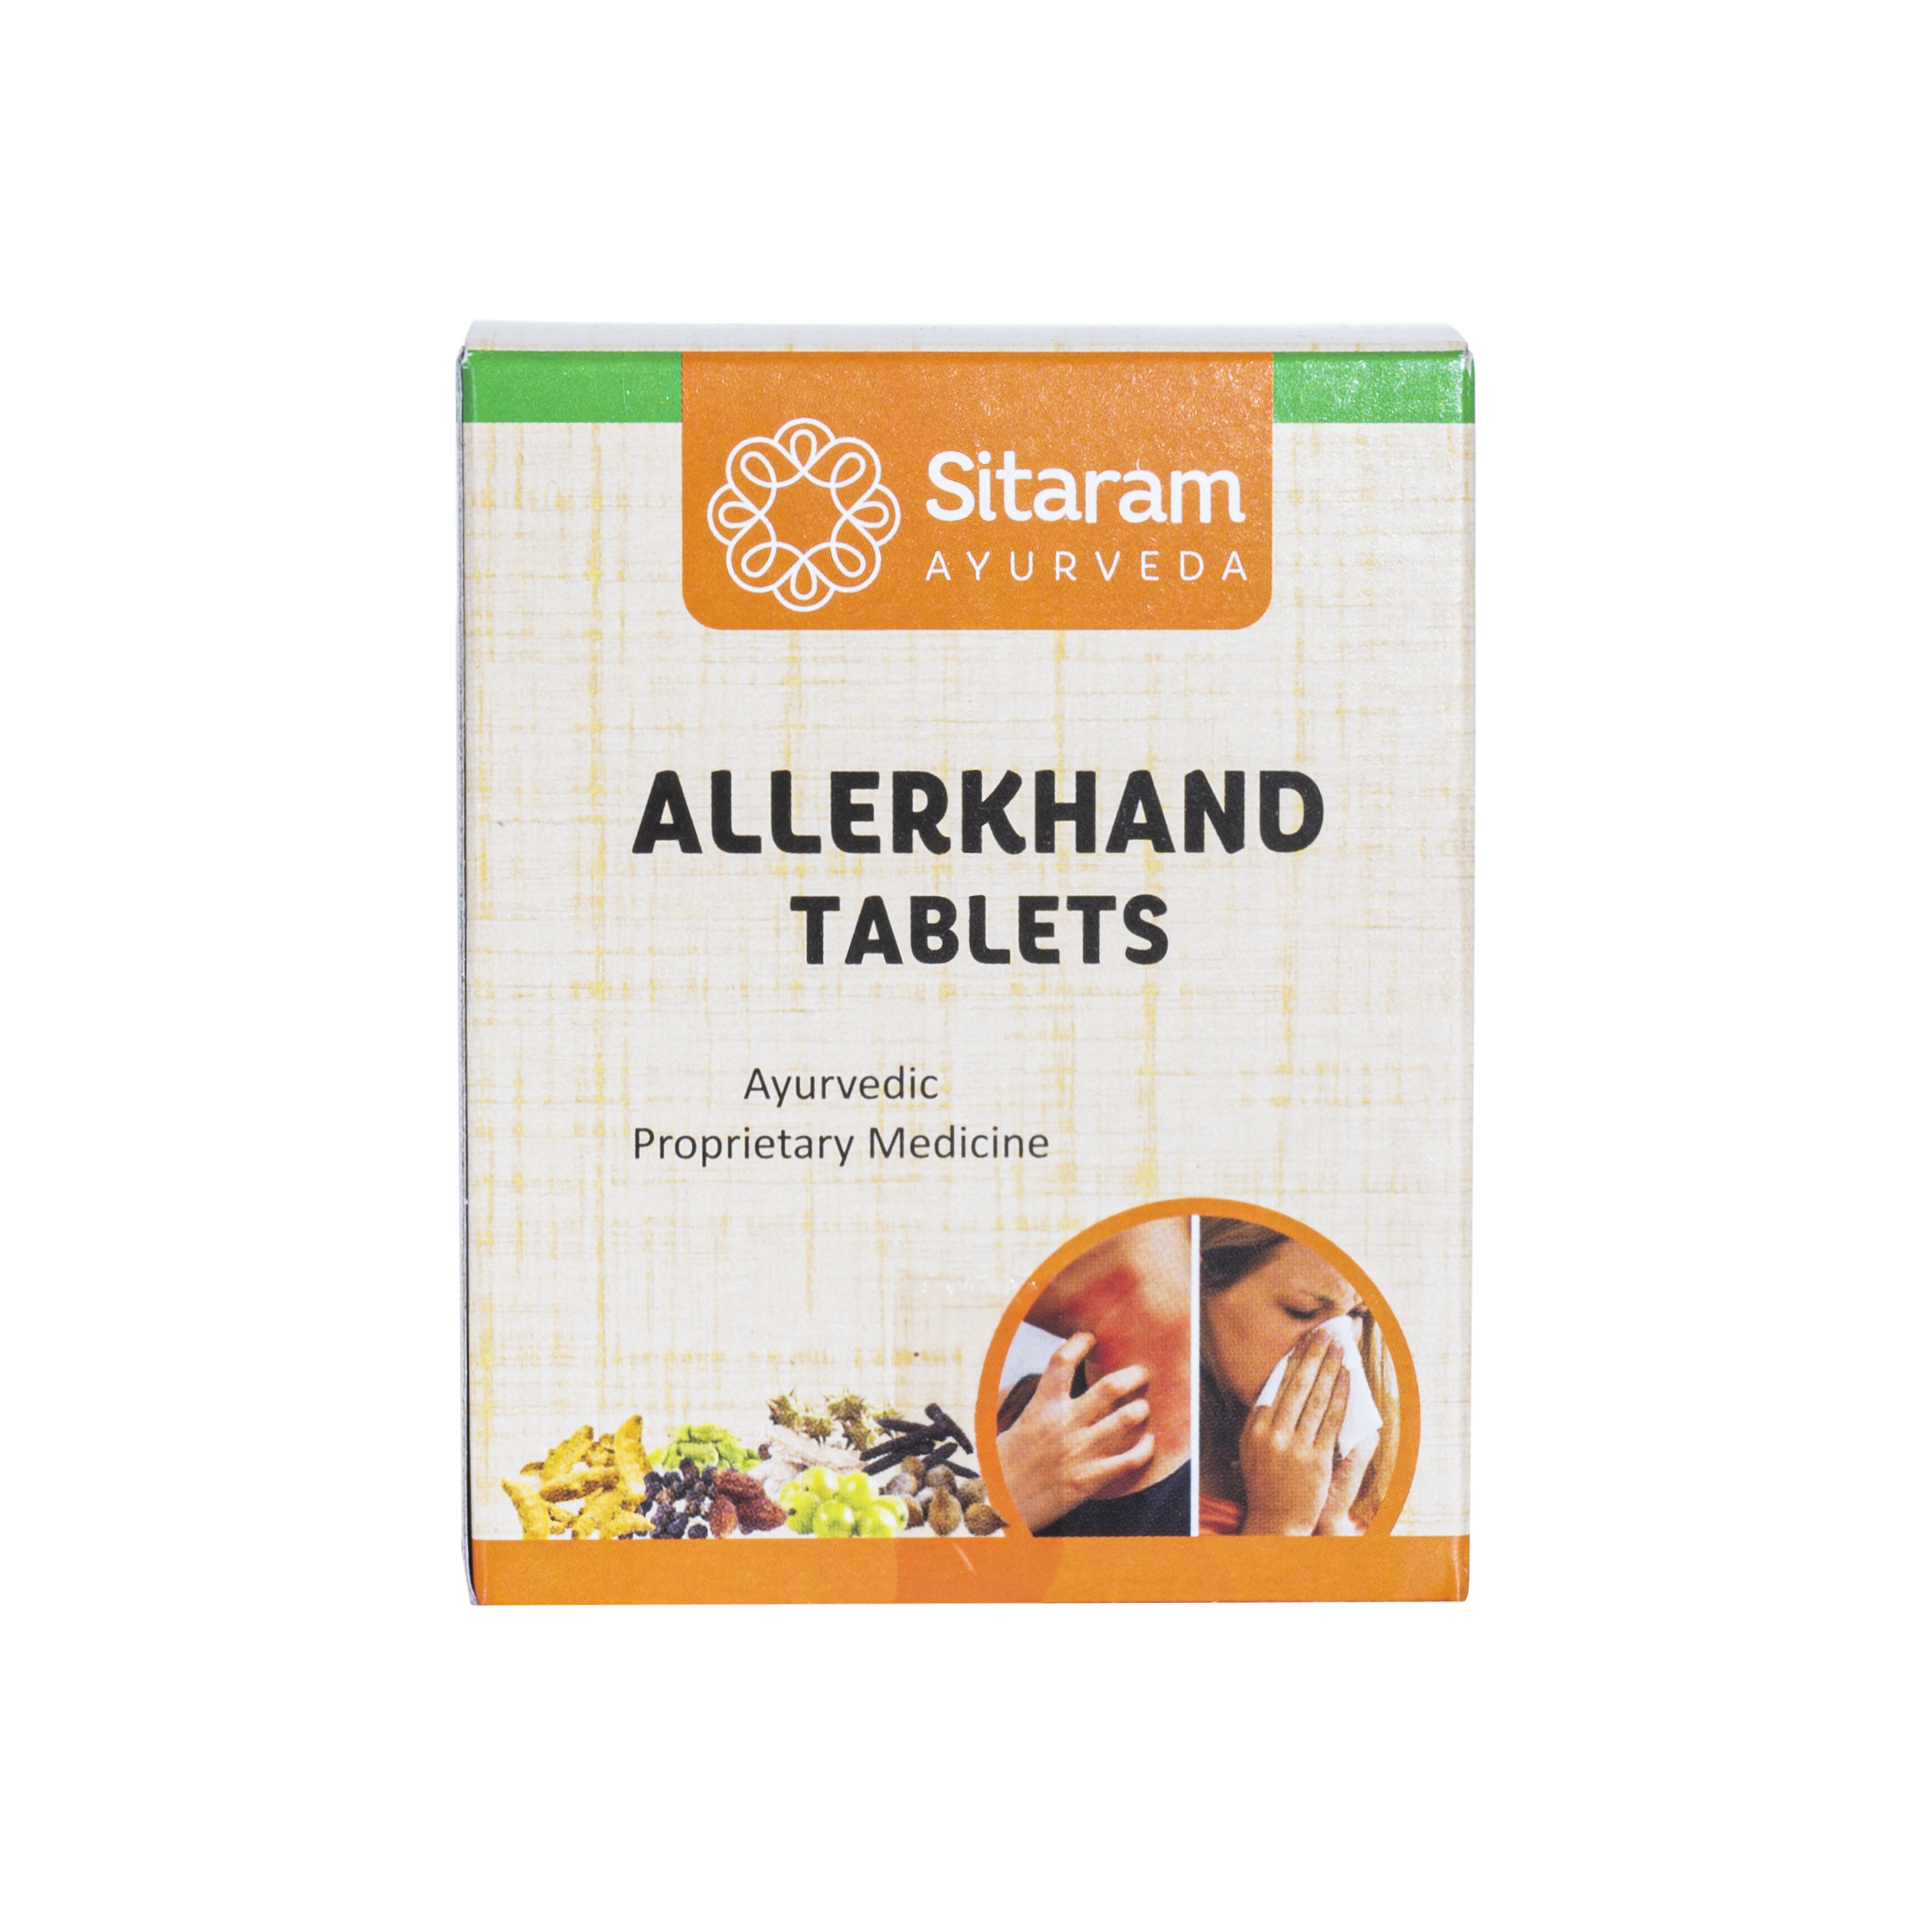 Sitaram Ayurveda Allerkhand Tablet 50Nos - Pack of 2 (Prescription Medication)